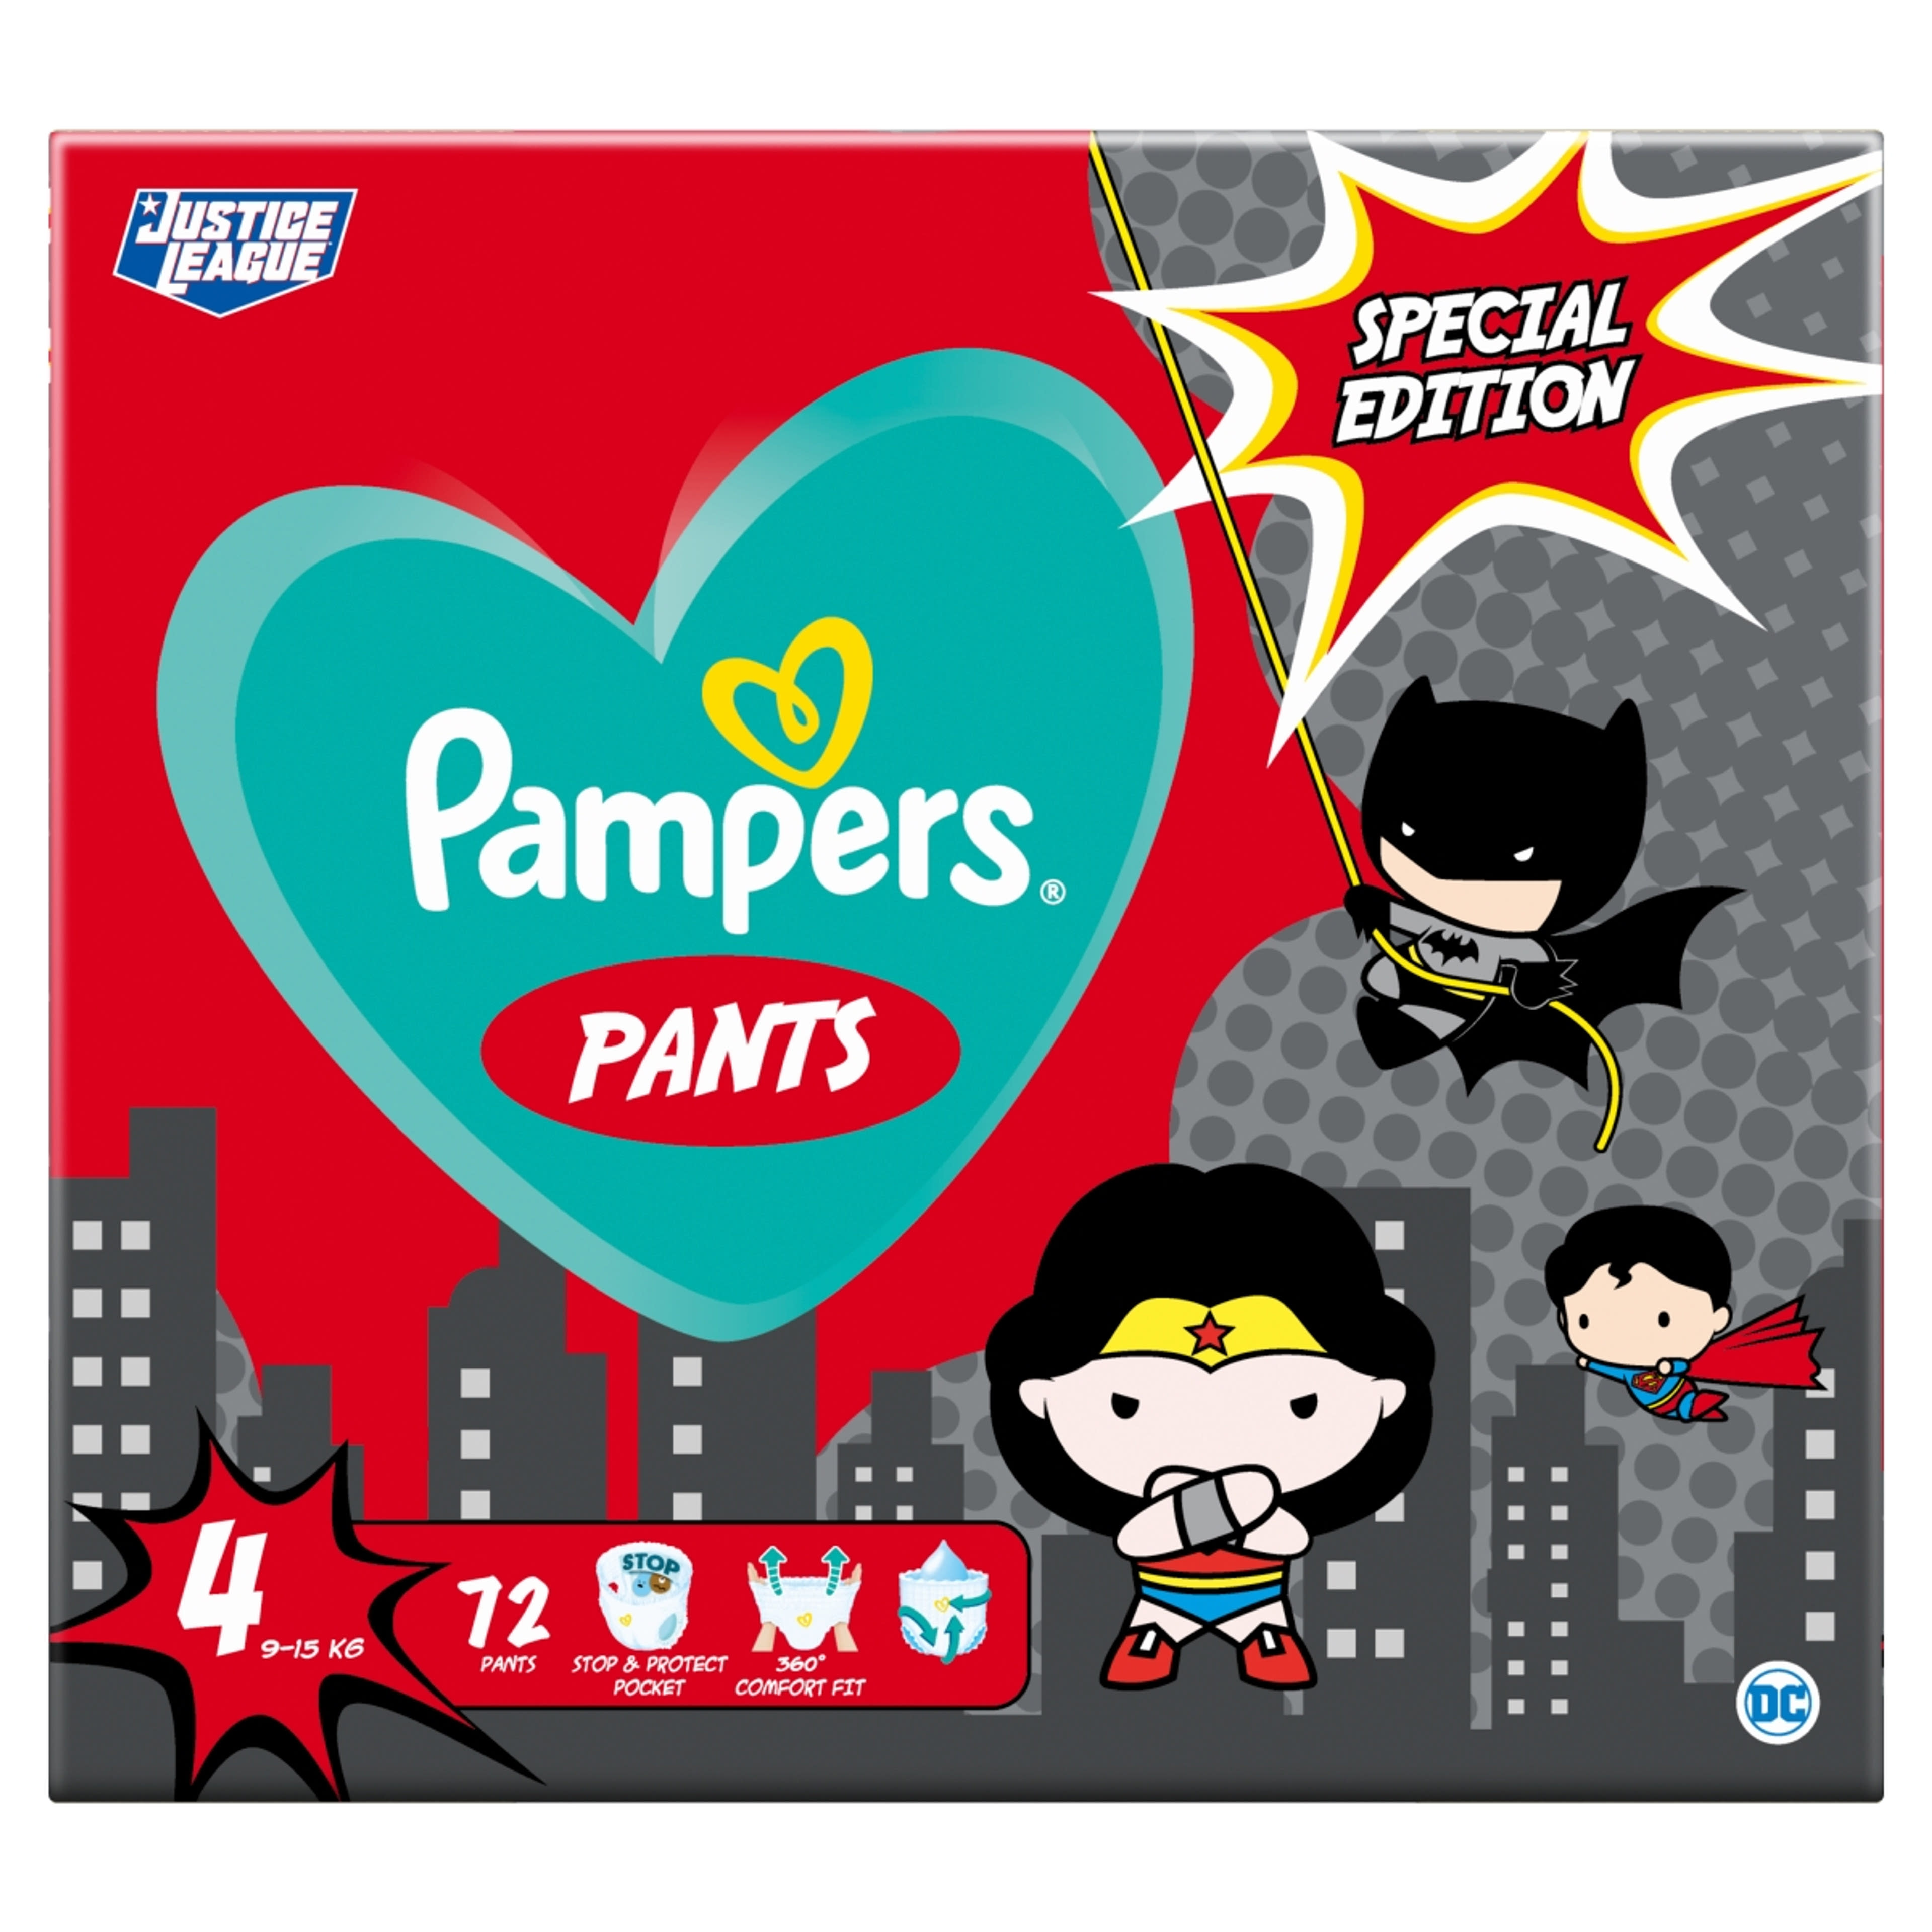 Pampers Pants Giant Pack+ Superheroes 4-es 9-15 kg - 72 db